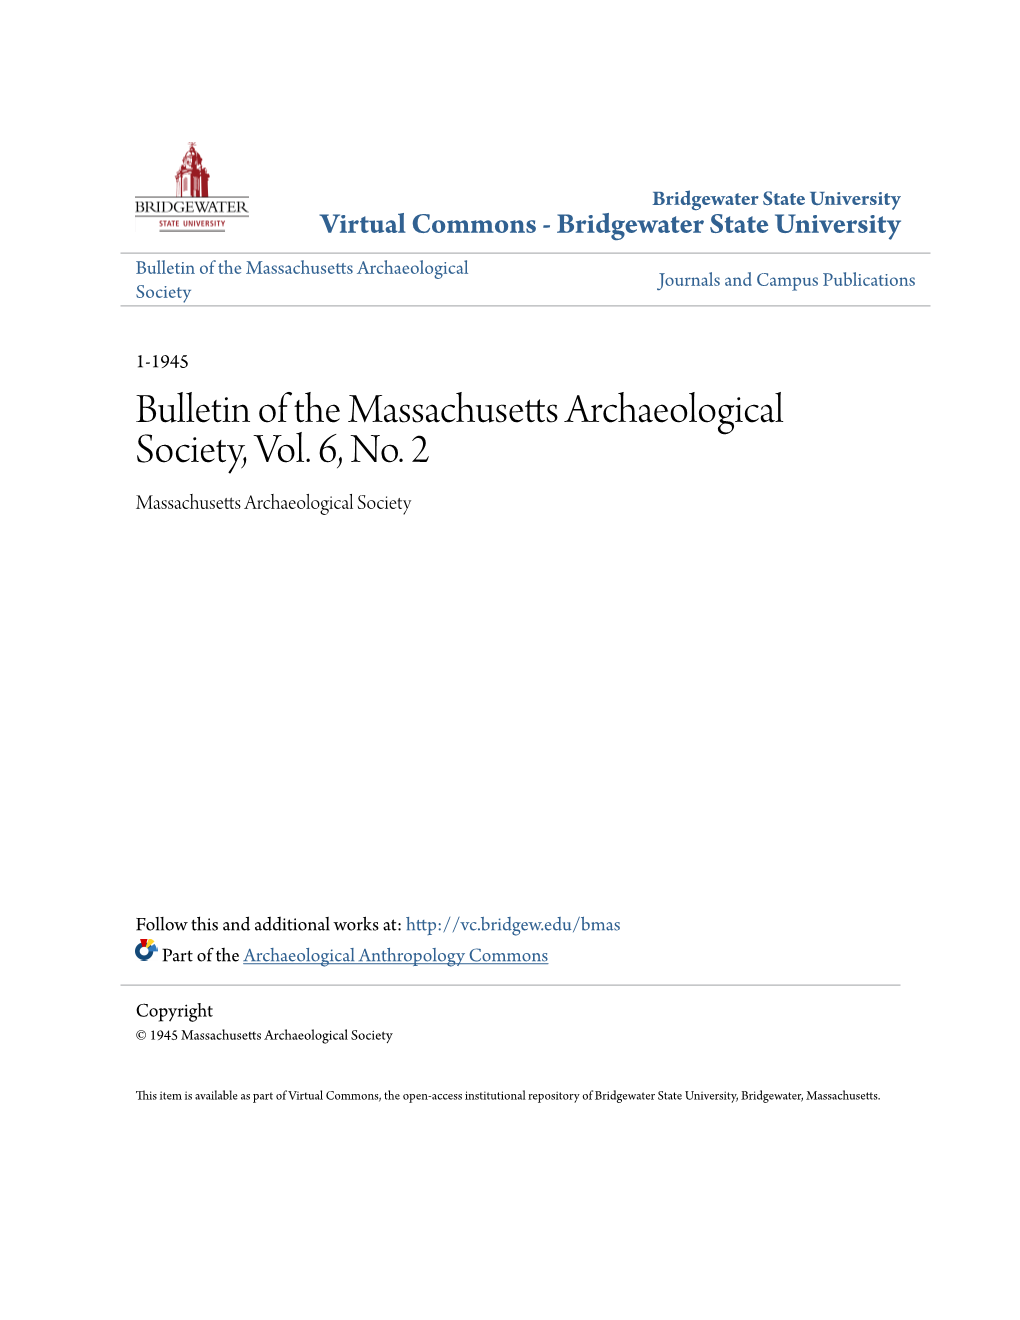 Bulletin of the Massachusetts Archaeological Society, Vol. 6, No. 2 Massachusetts Archaeological Society